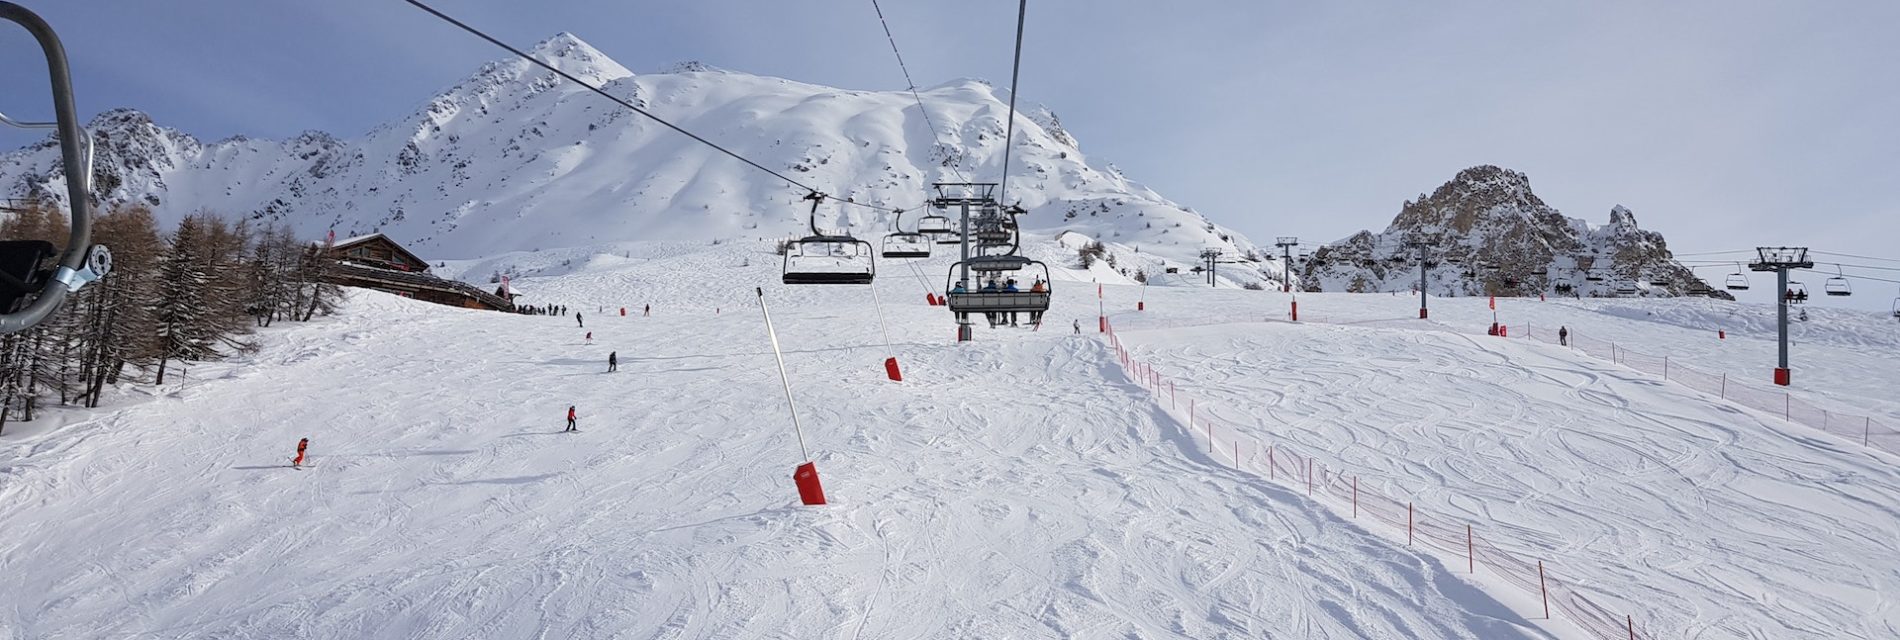 Station de ski avec télésiège et piste en dessous